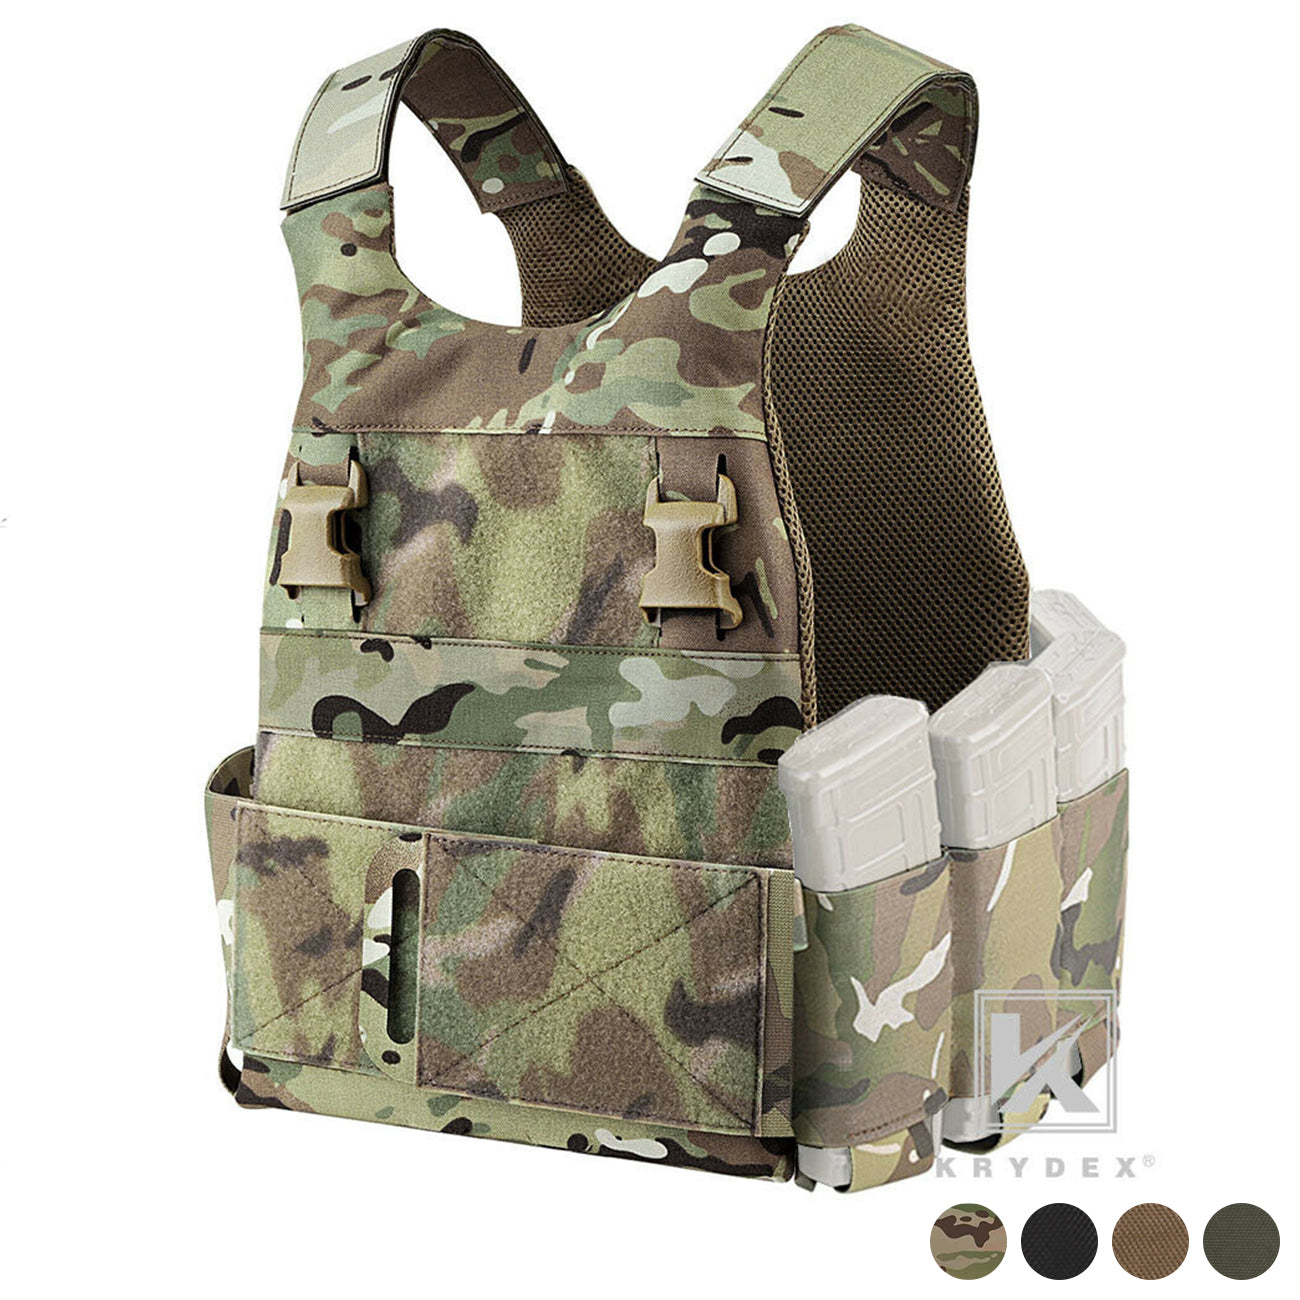 KRYDEX Low Vis Slick Multi-Mission Plate Carrier Low Profile Body Armor Adjustable Tactical Vest